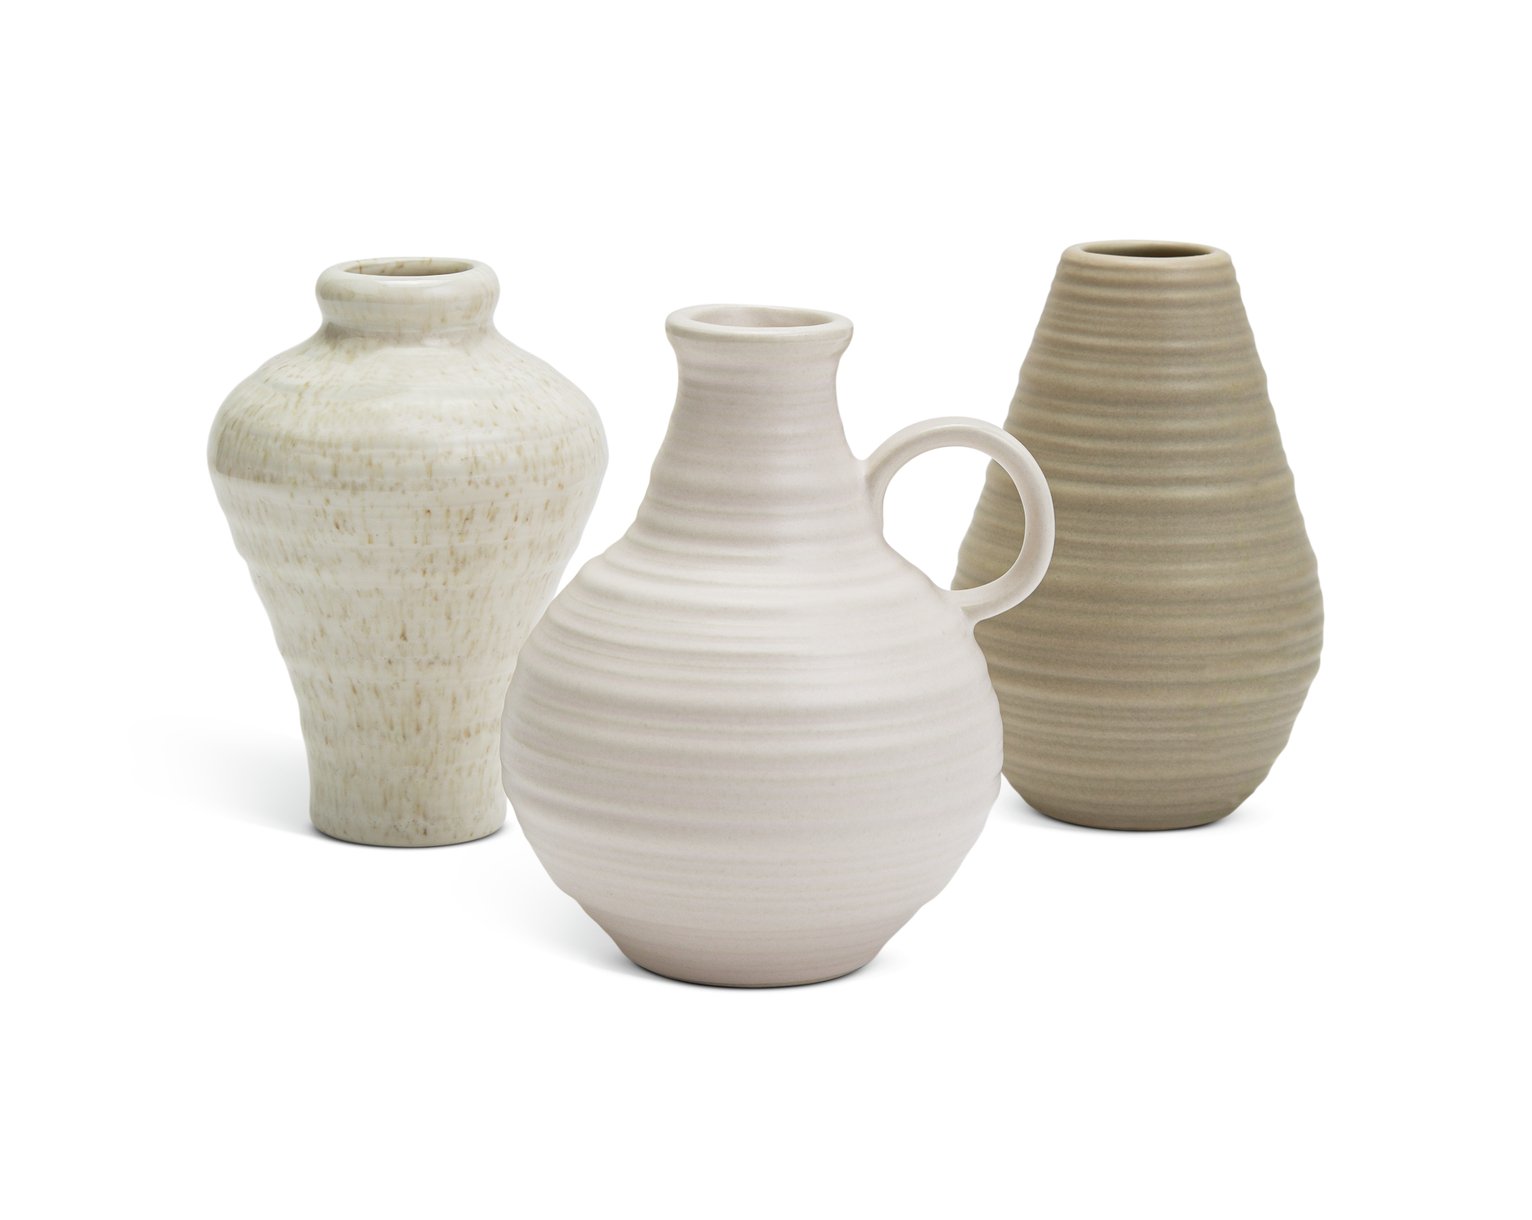 Habitat Ceramic Bud Vases - Set of 3 - Cream